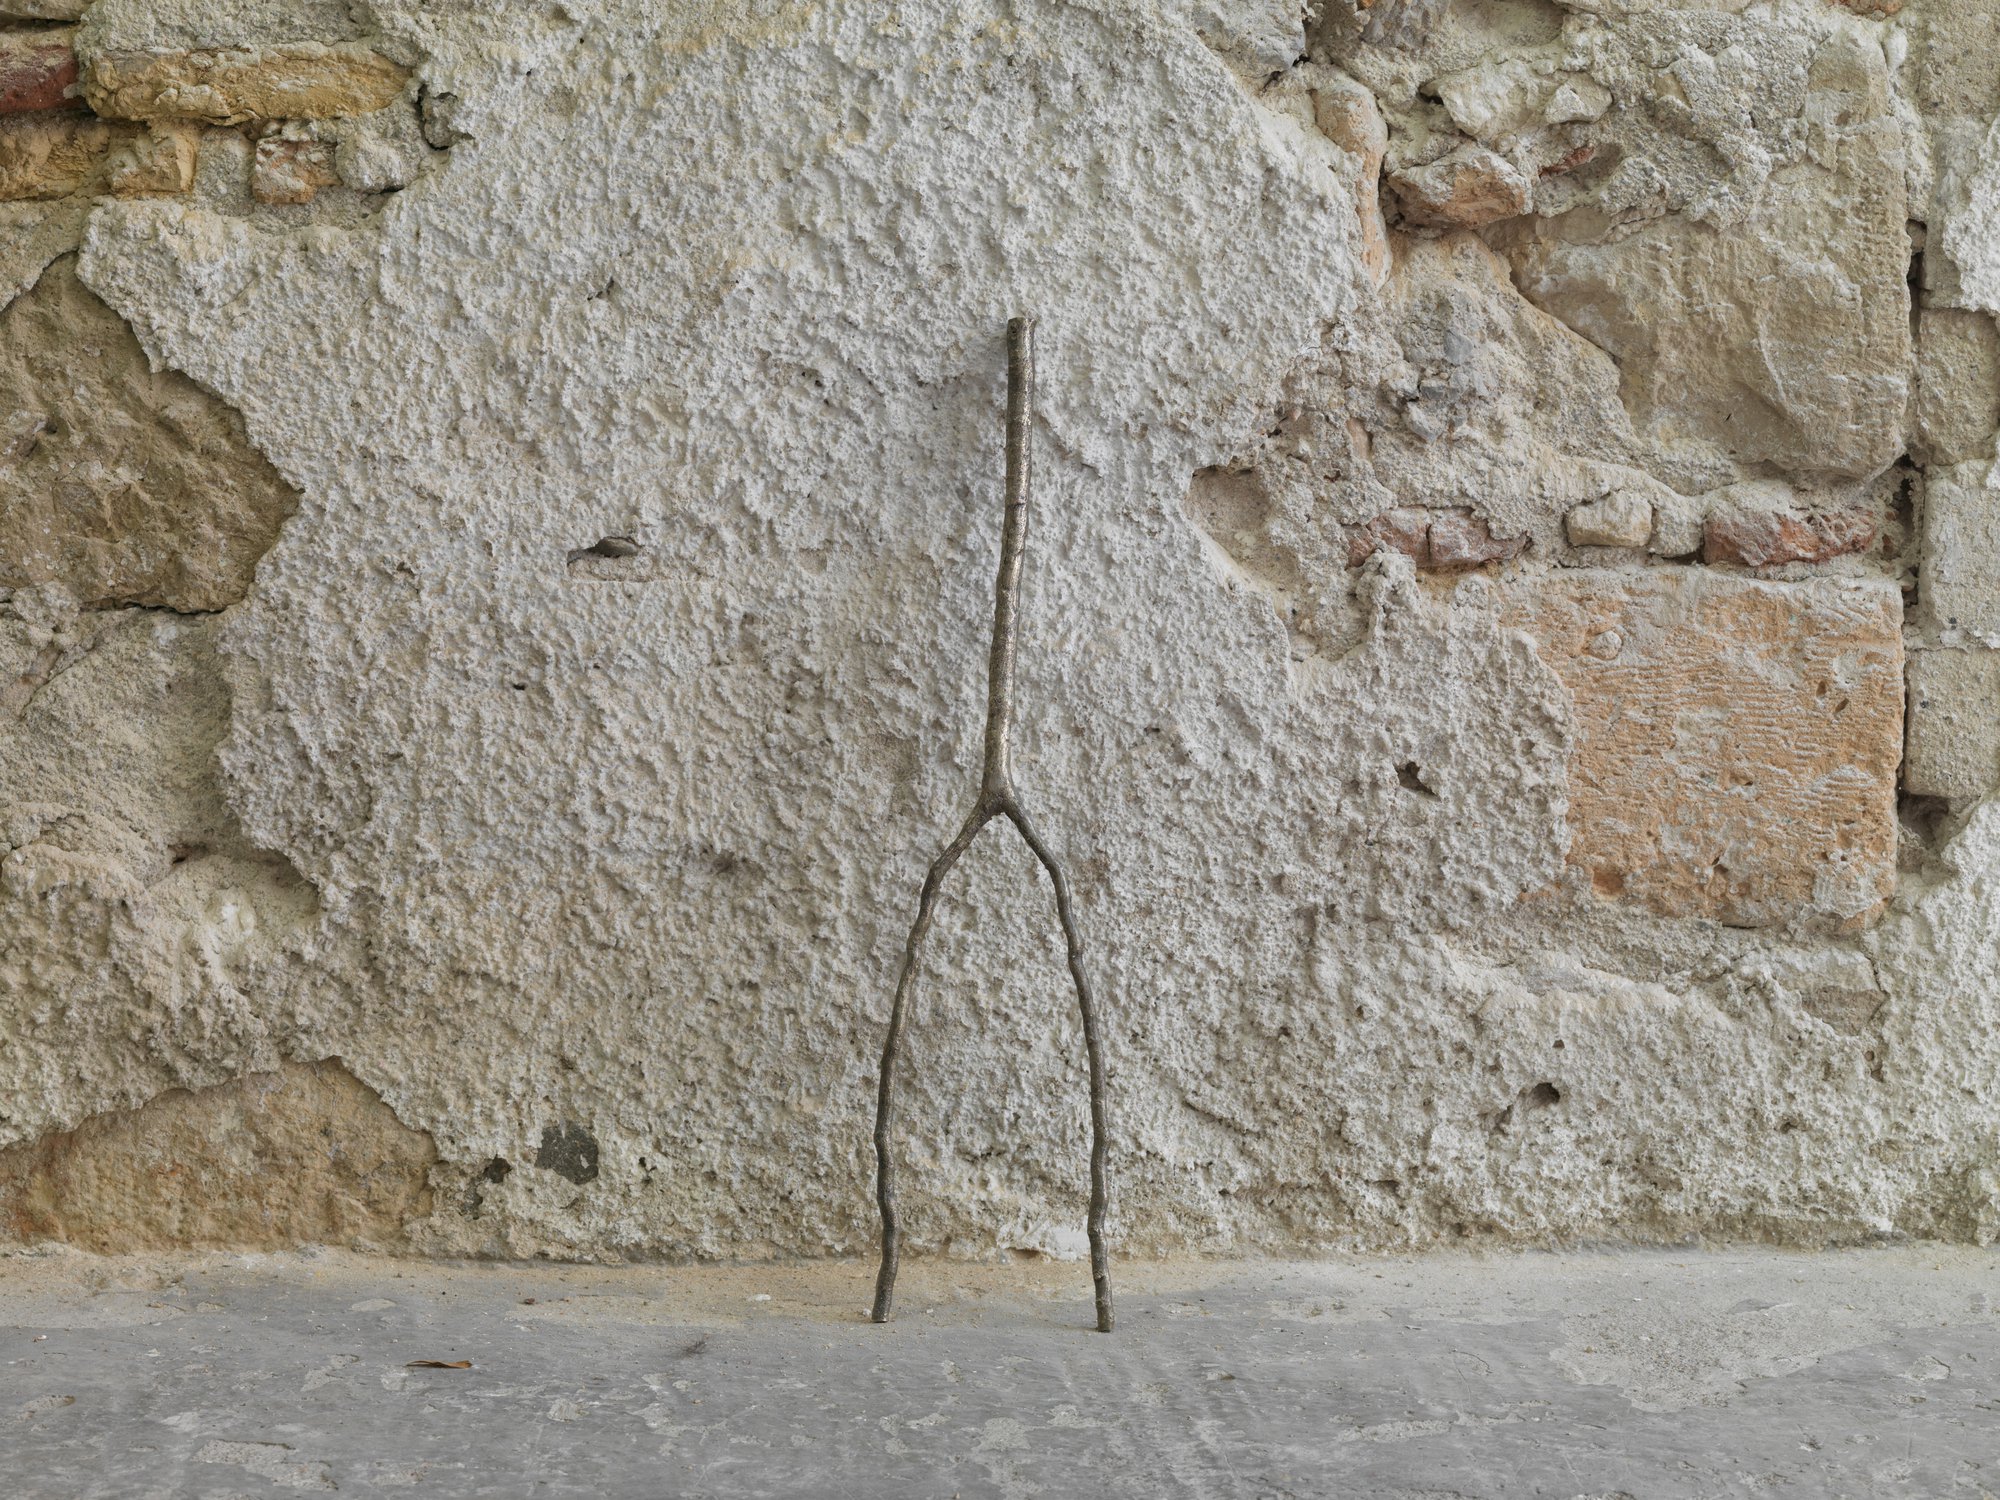 Giorgio Andreotta Calò, Senza titolo (ramo), white bronze, 60 x 20 x 2 cm (23 5/8 x 7 7/8 x 3/4 in), 2015